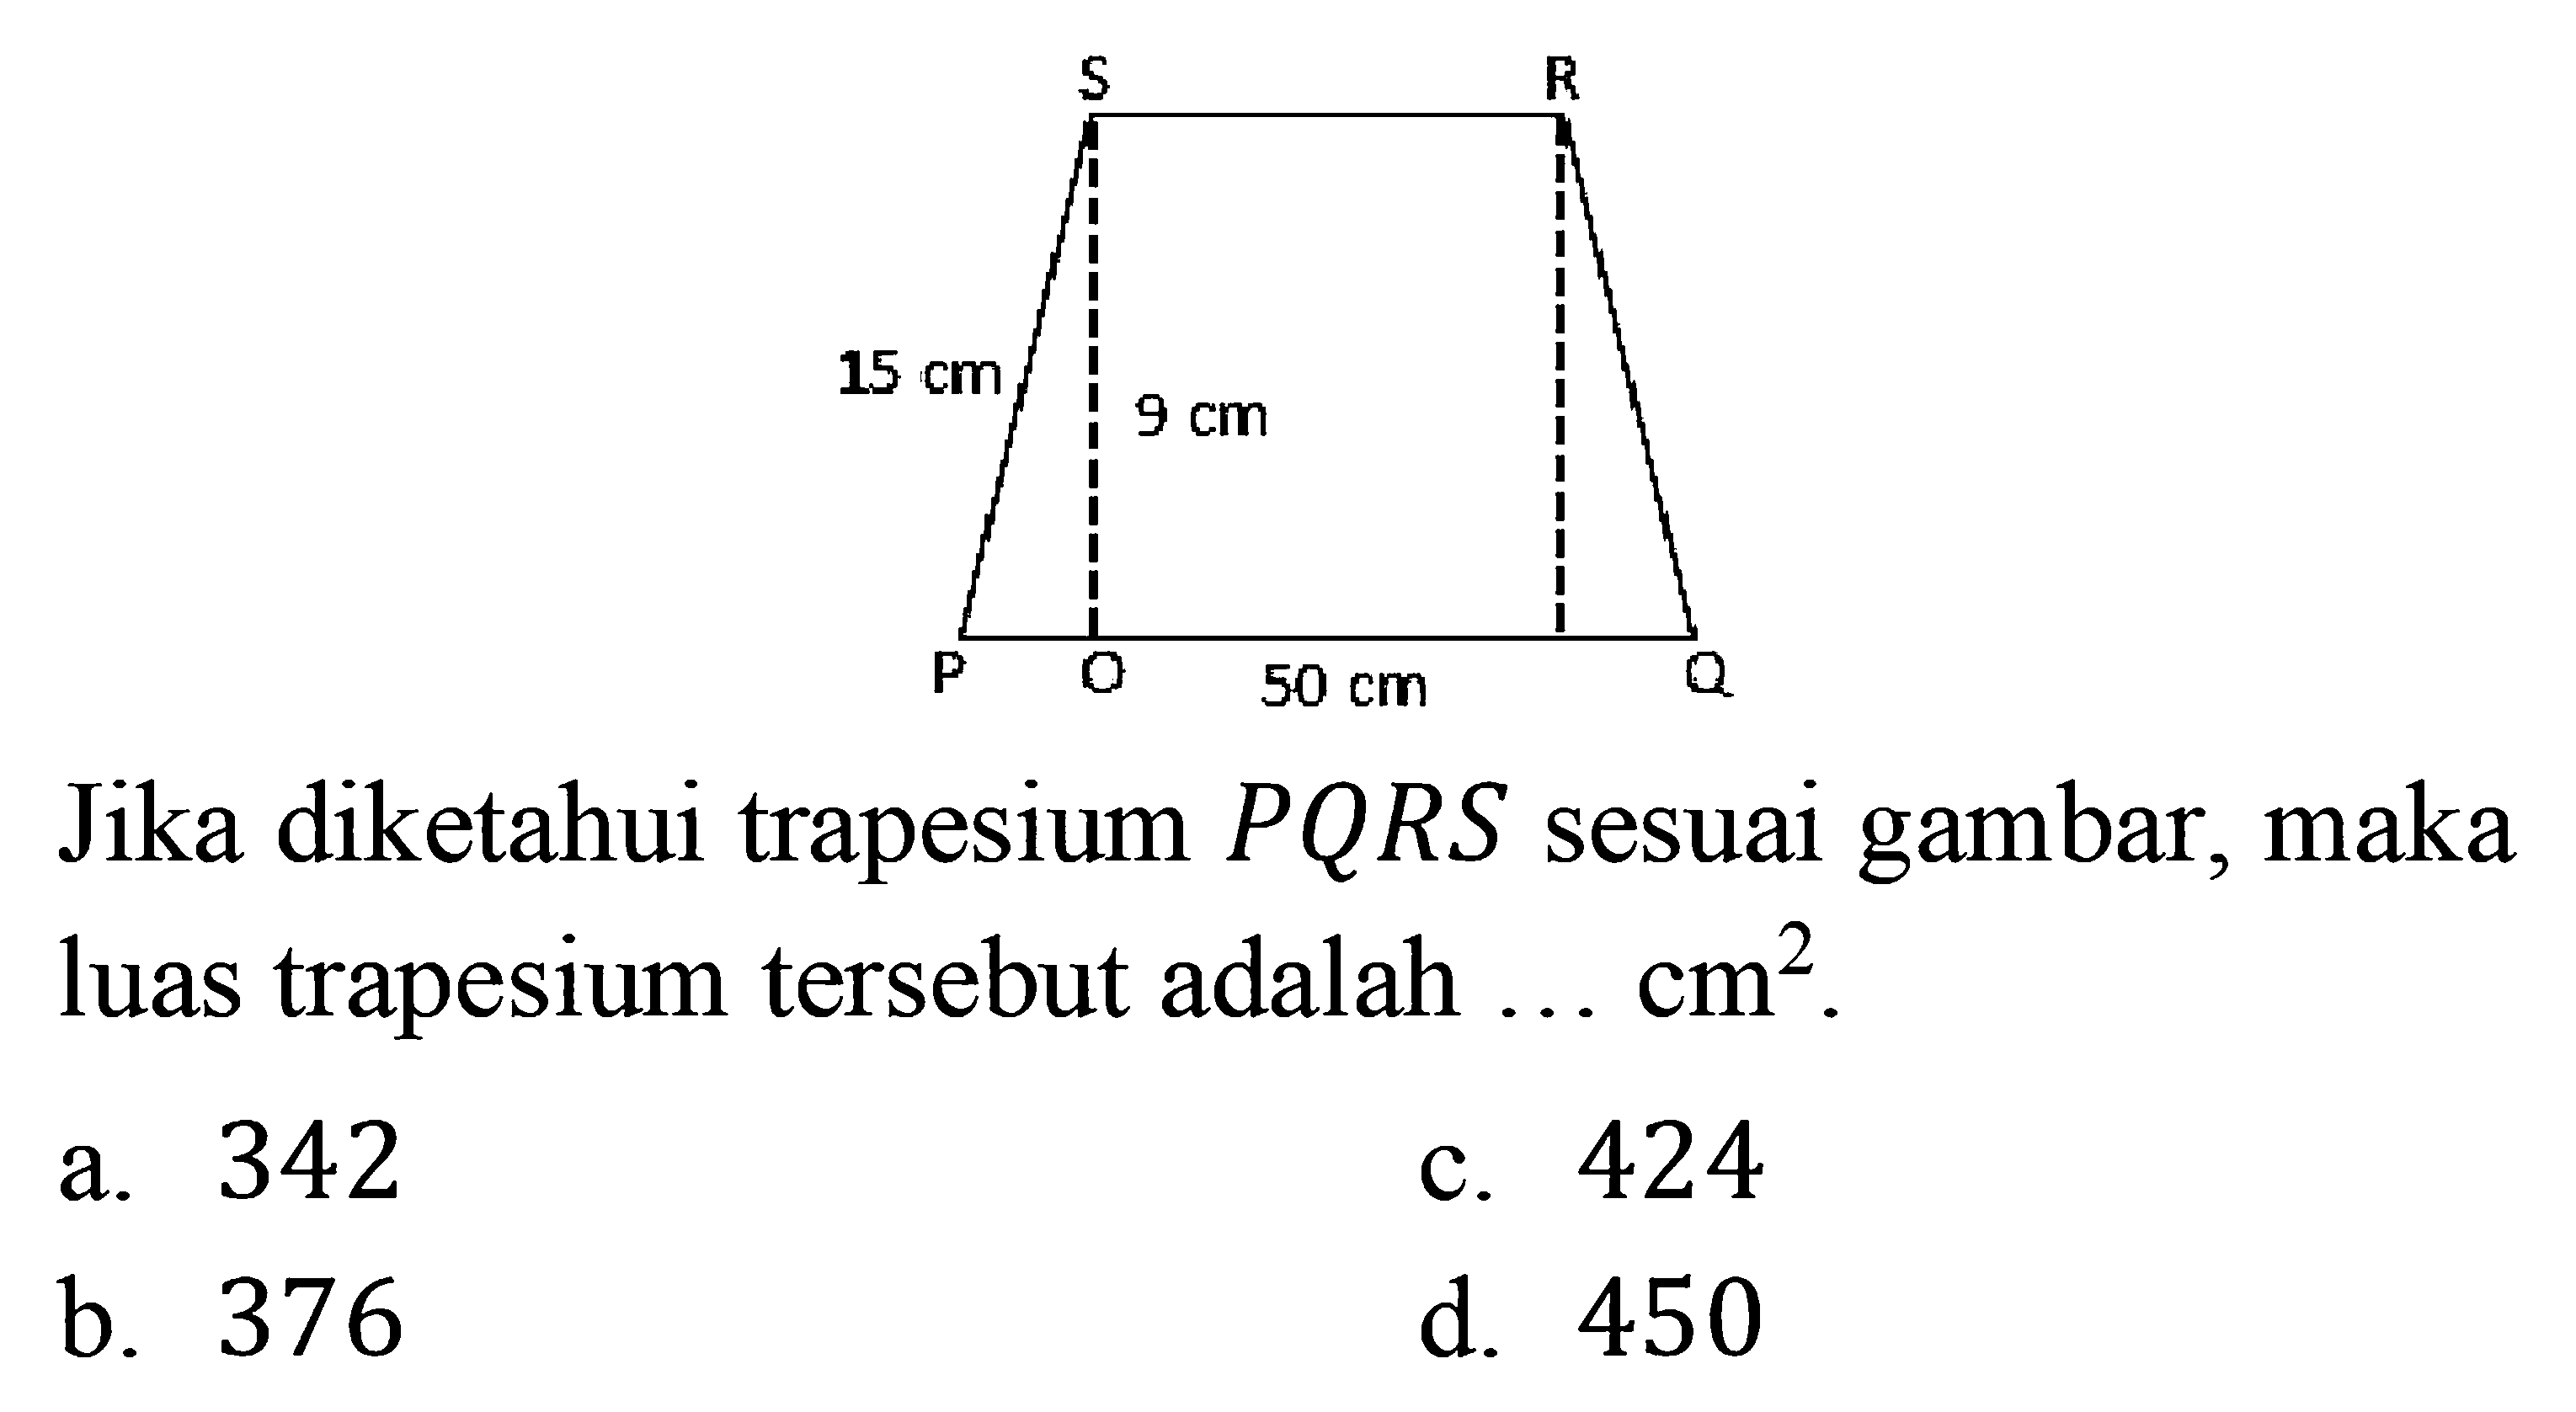 15 cm 9 cm 50 cm Jika diketahui trapesium  PQRS  sesuai gambar, maka luas trapesium tersebut adalah ...  cm^2 
